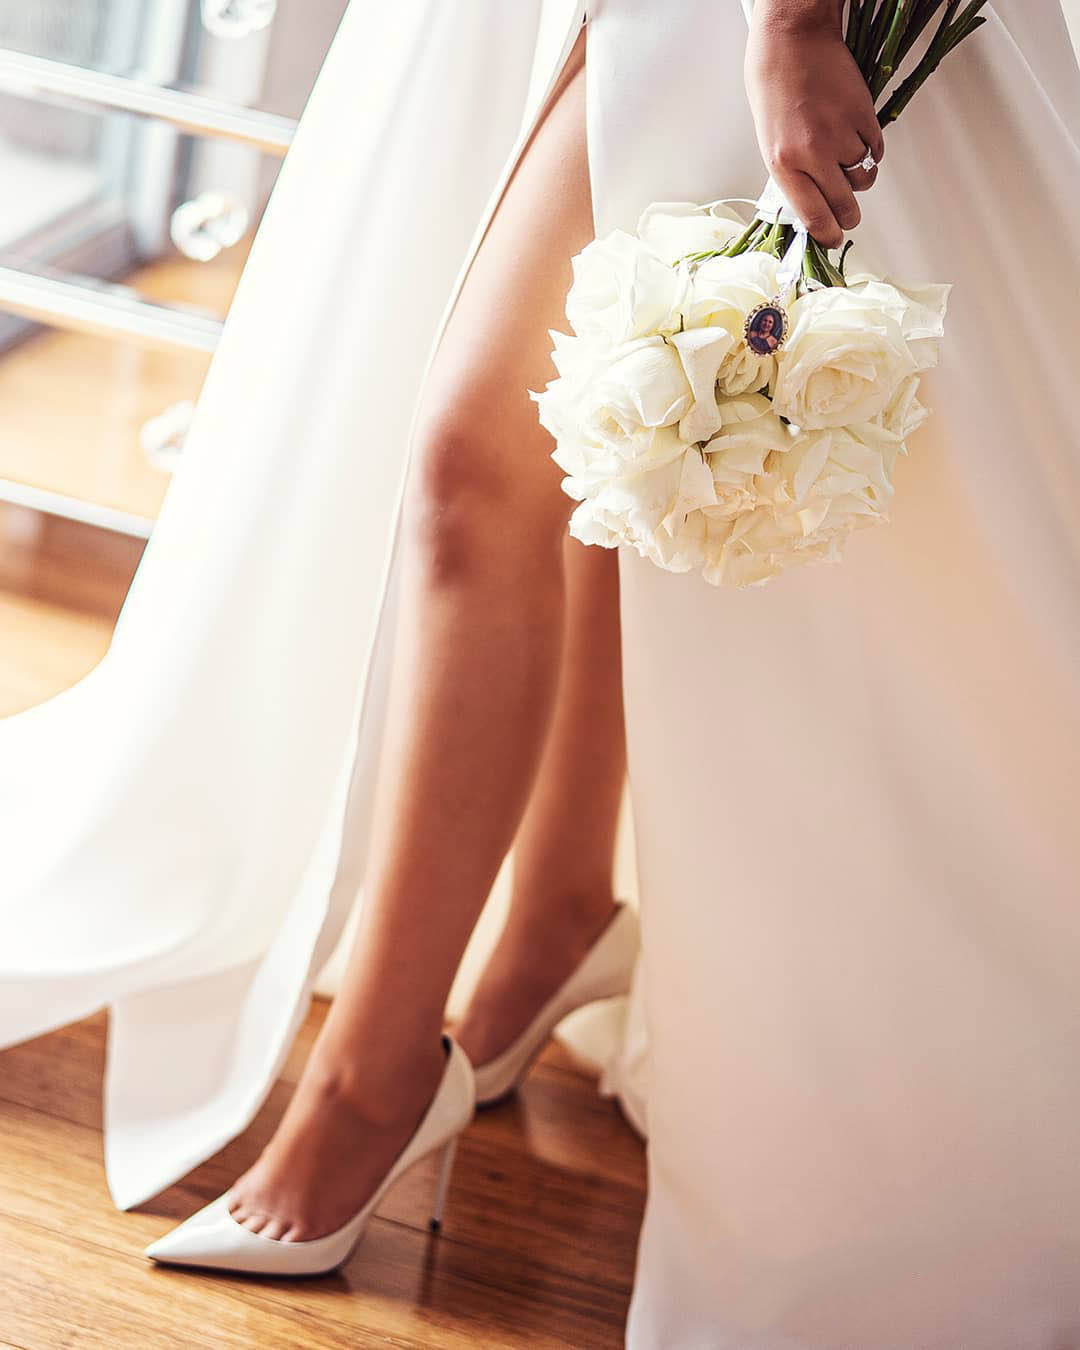 sexy wedding pictures bridea legs with bouquet michalkrieschstudios